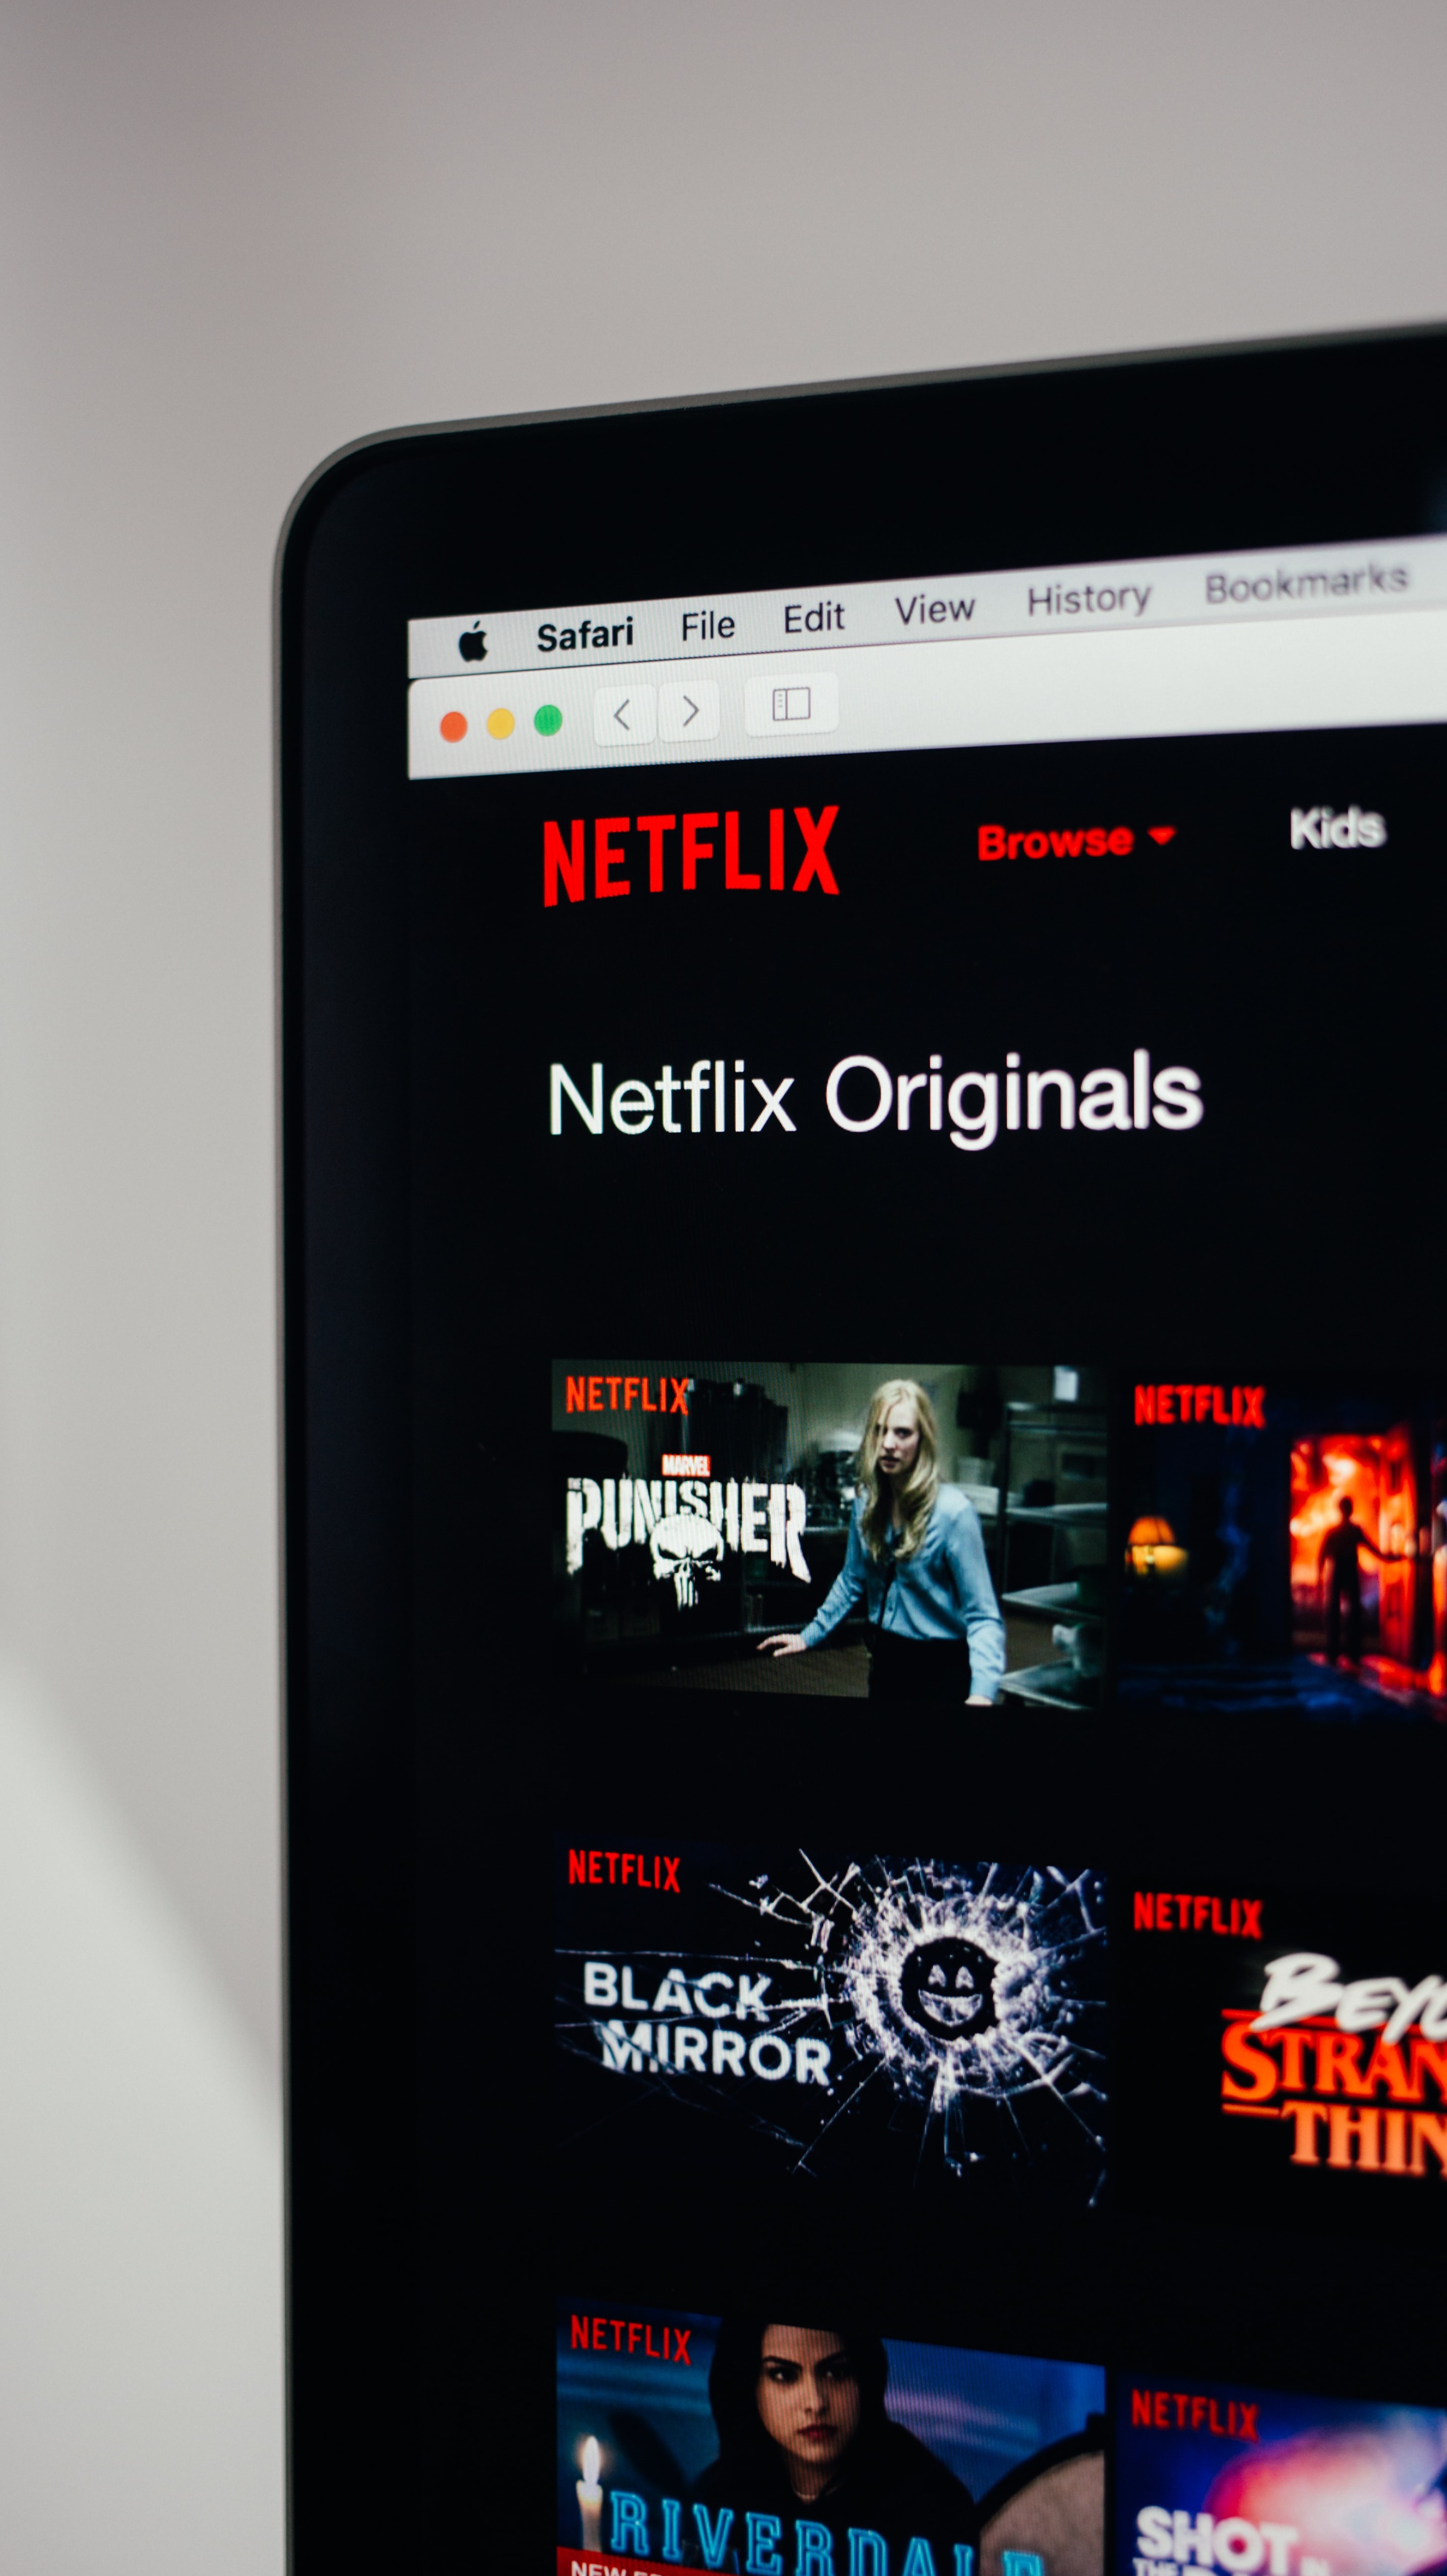 Códigos da Netflix: veja como descobrir categorias secretas de